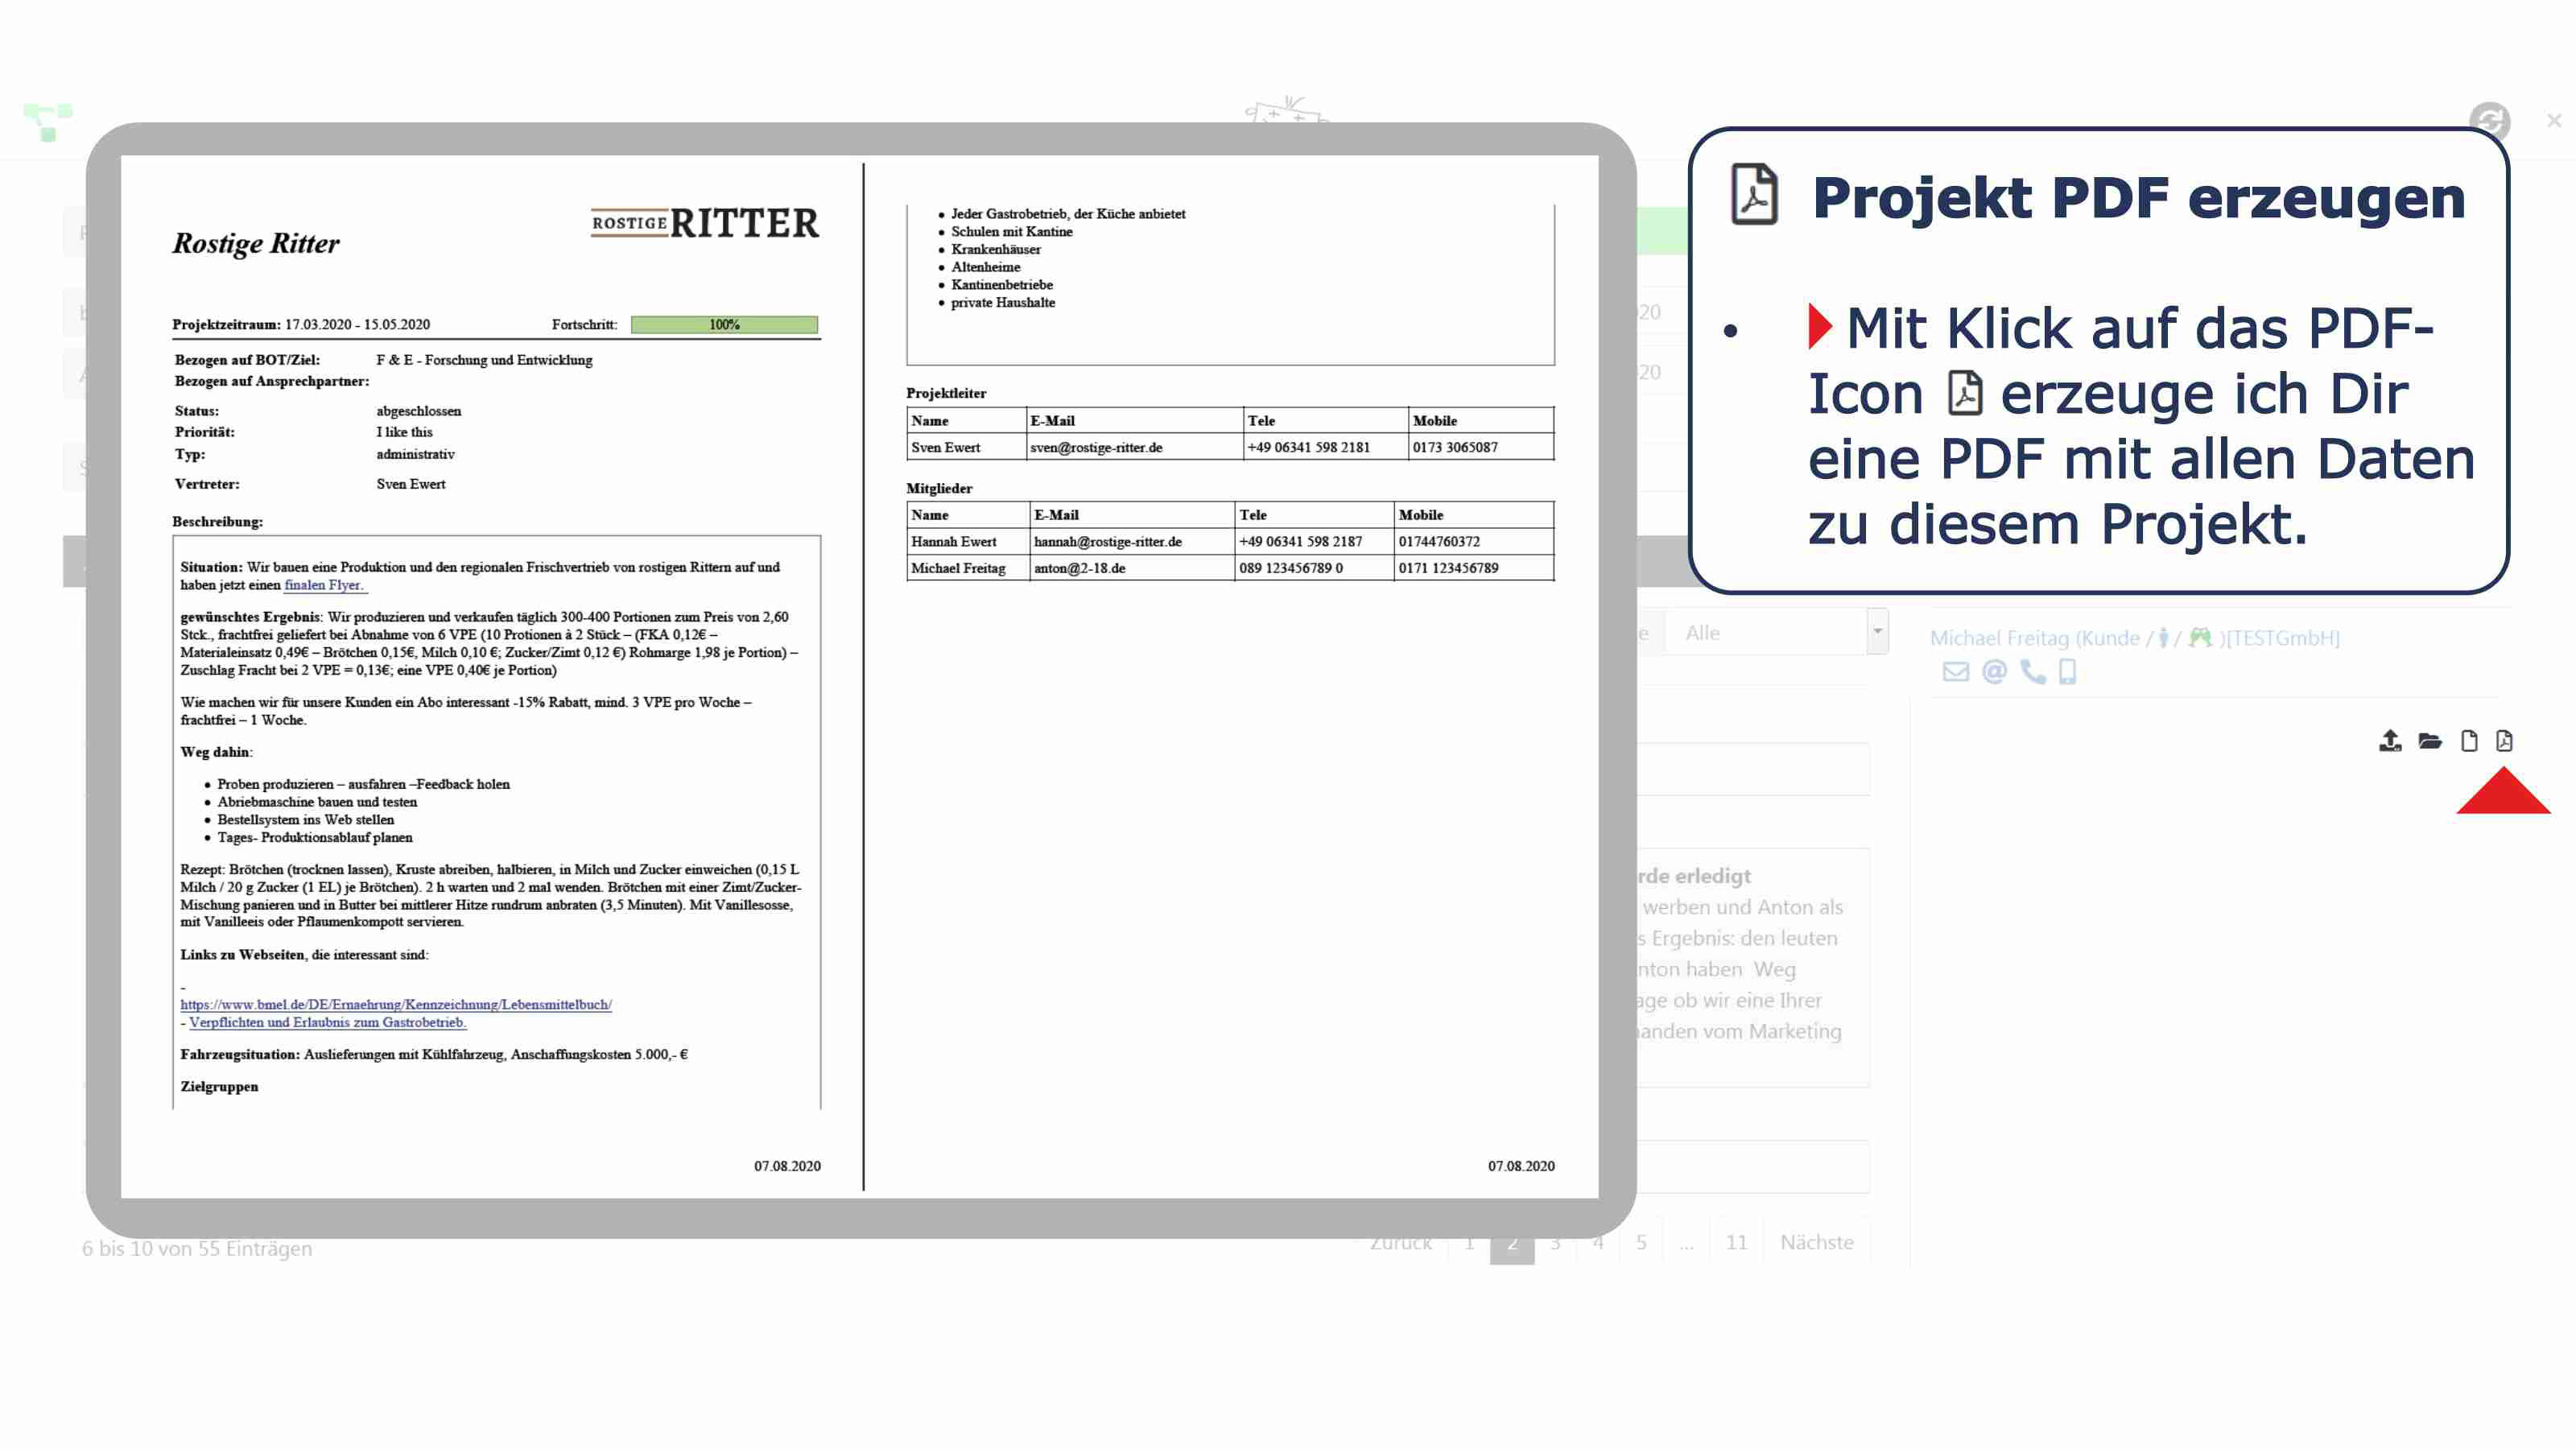 Projekte Details PDF erzeugen